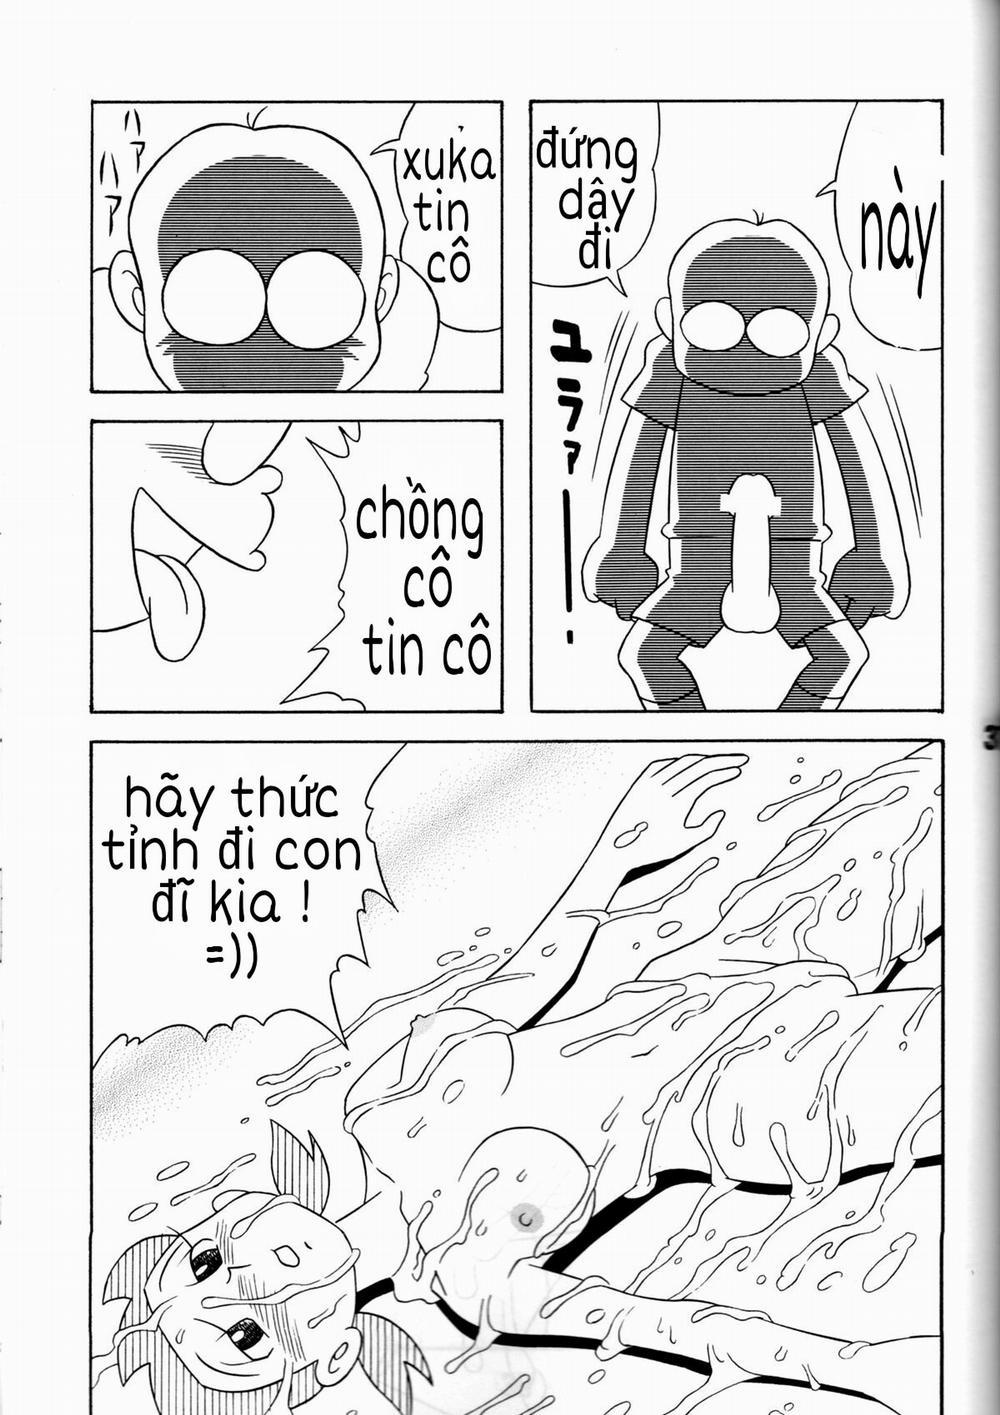 Tuyển Tập Doraemon Doujinshi 18+ Chương 7 Xuka v m g u Trang 29